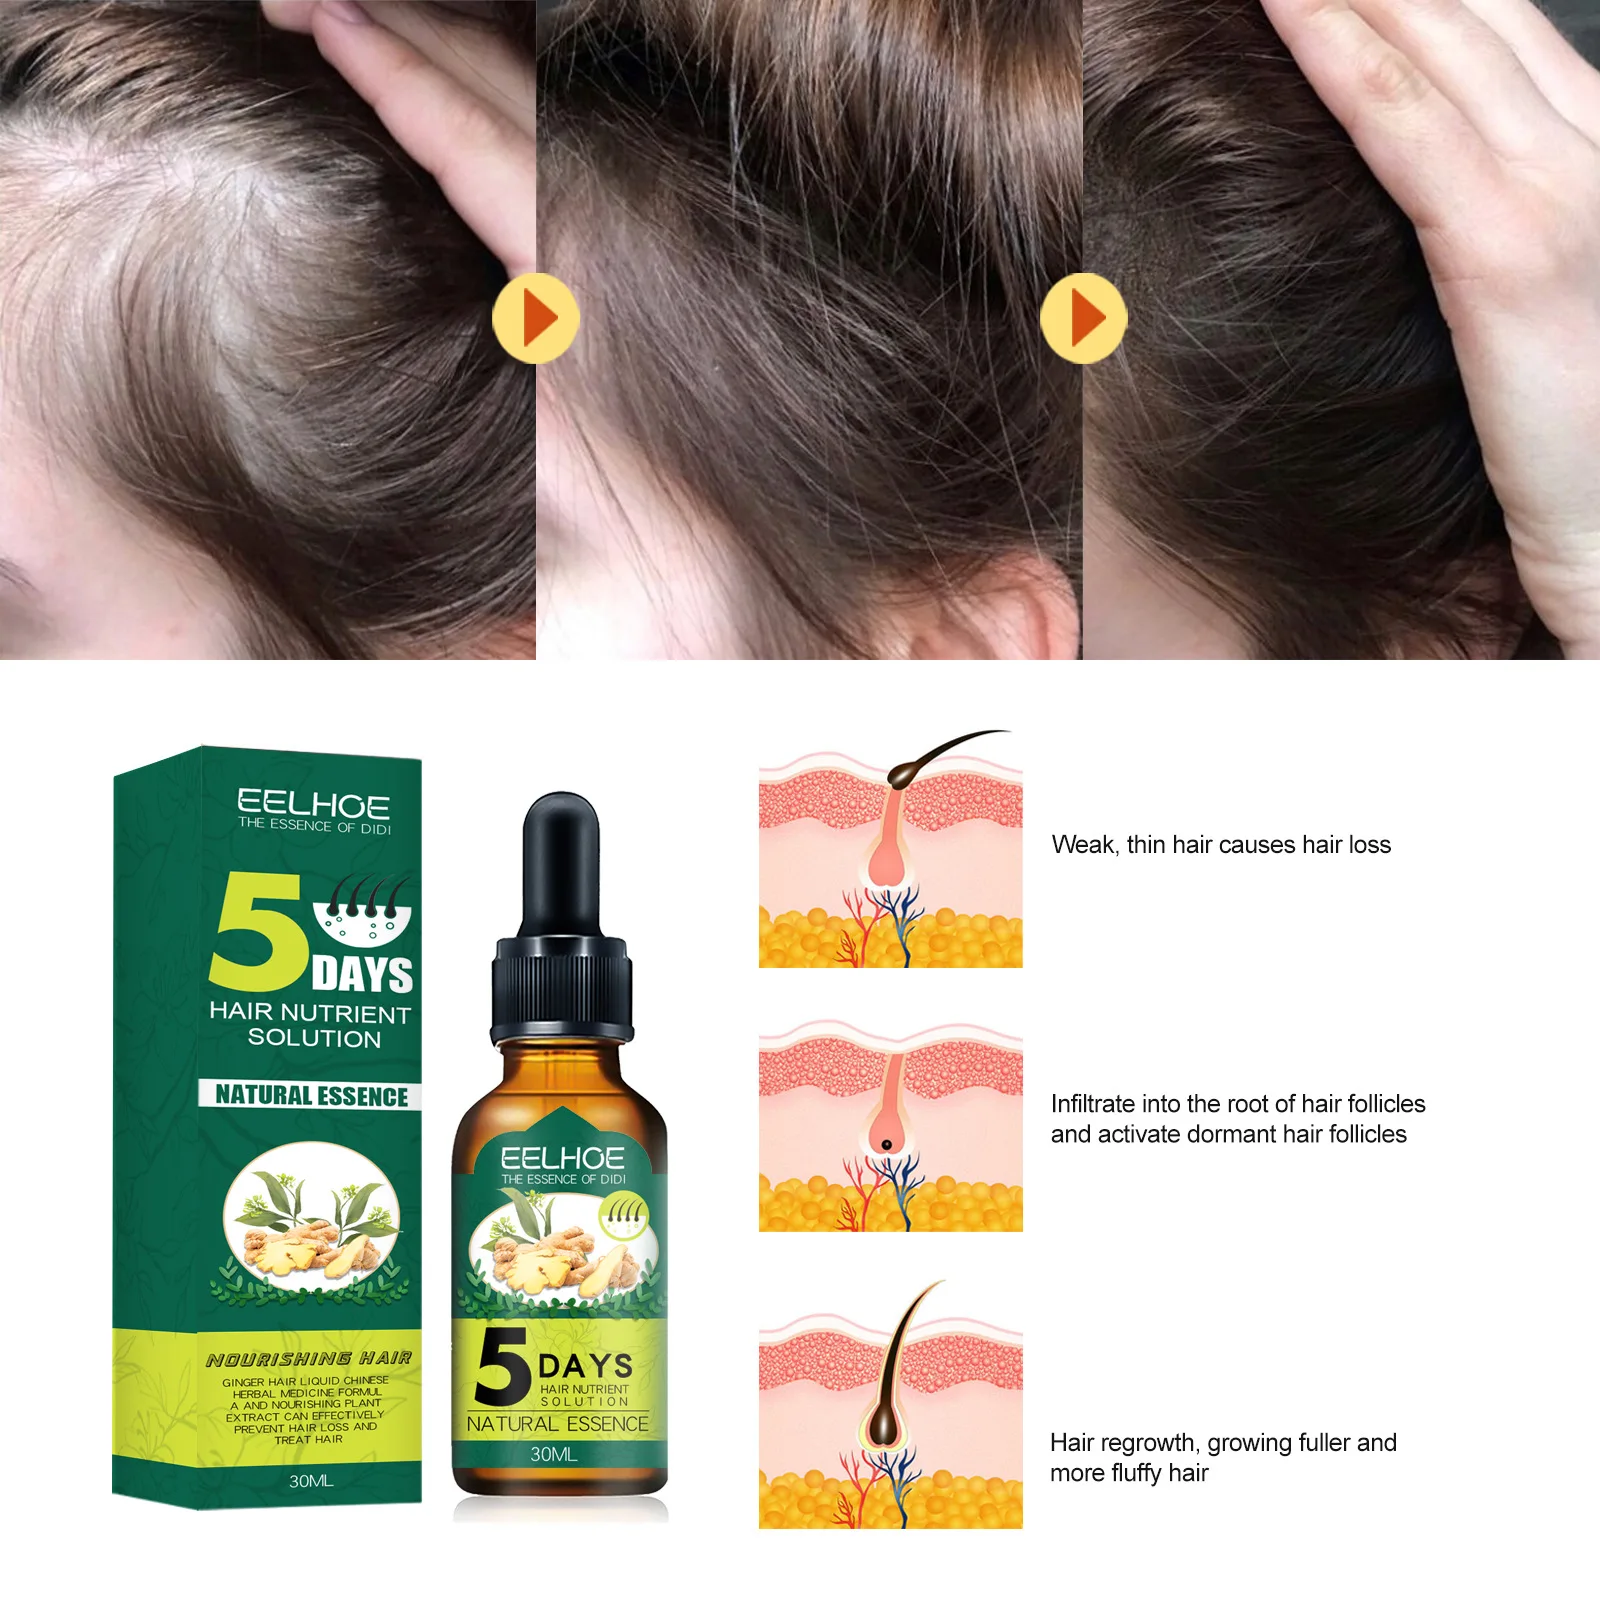 

7 Days Ginger Hair Care Essential Oil Hair Growth Natural Solution Anti Hair Fall Oil Treatment Serum Essence Hair Care 30ml